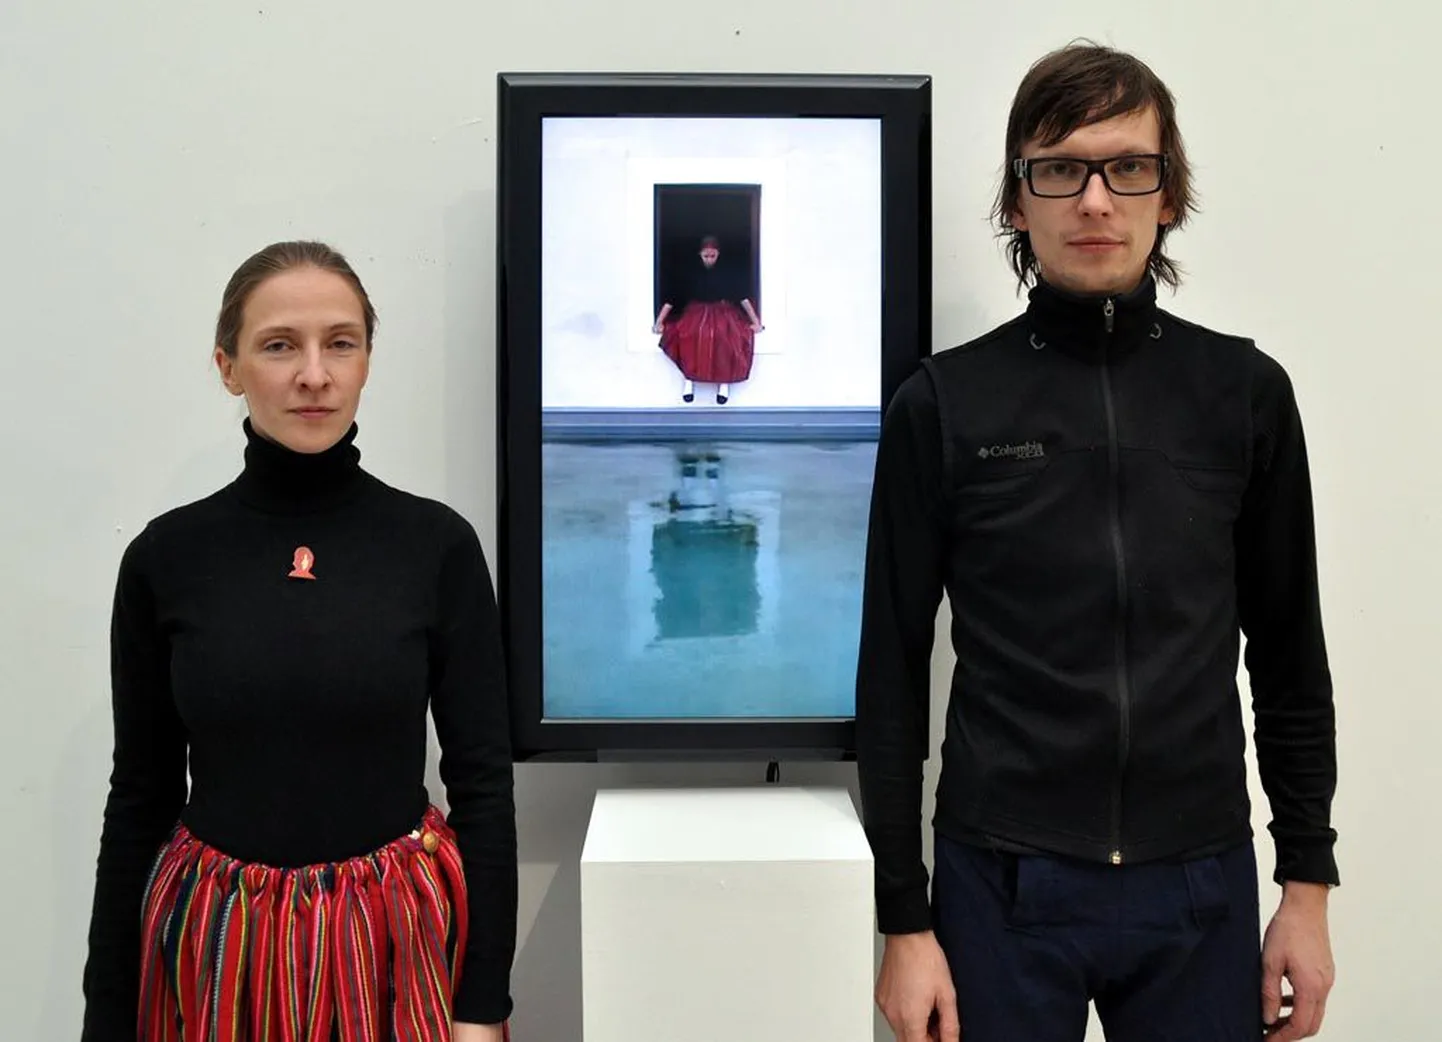 Kunstnikud Silja Saarepuu ja Villu Plink edastavad lühikeste videofilmide kaudu mõistulugusid eestlase tööst ja toimetustest, olles ise ka peategelased.